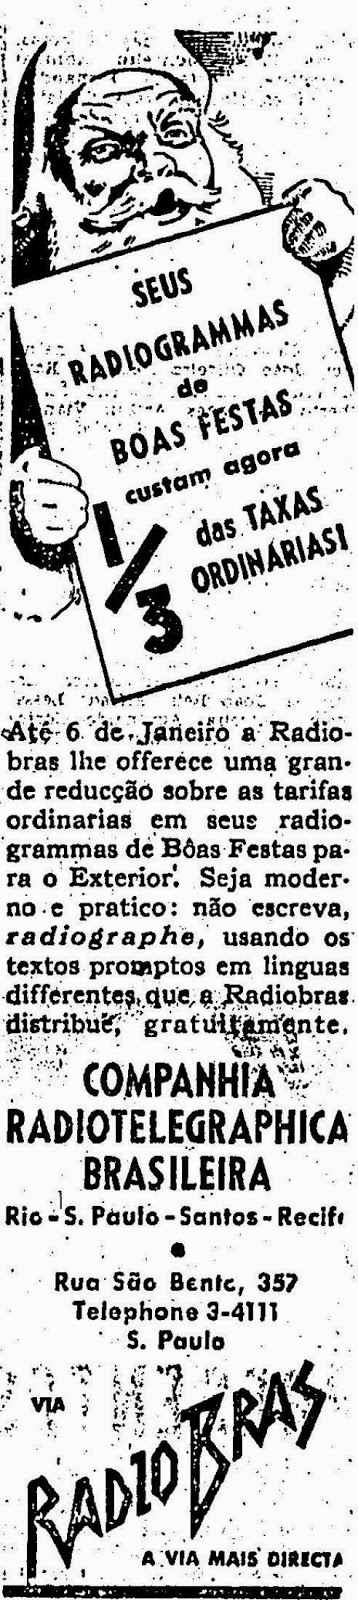 Propaganda para envio de Radiogramas (telegramas via rádio) em 1940. Campanha para época natalina.